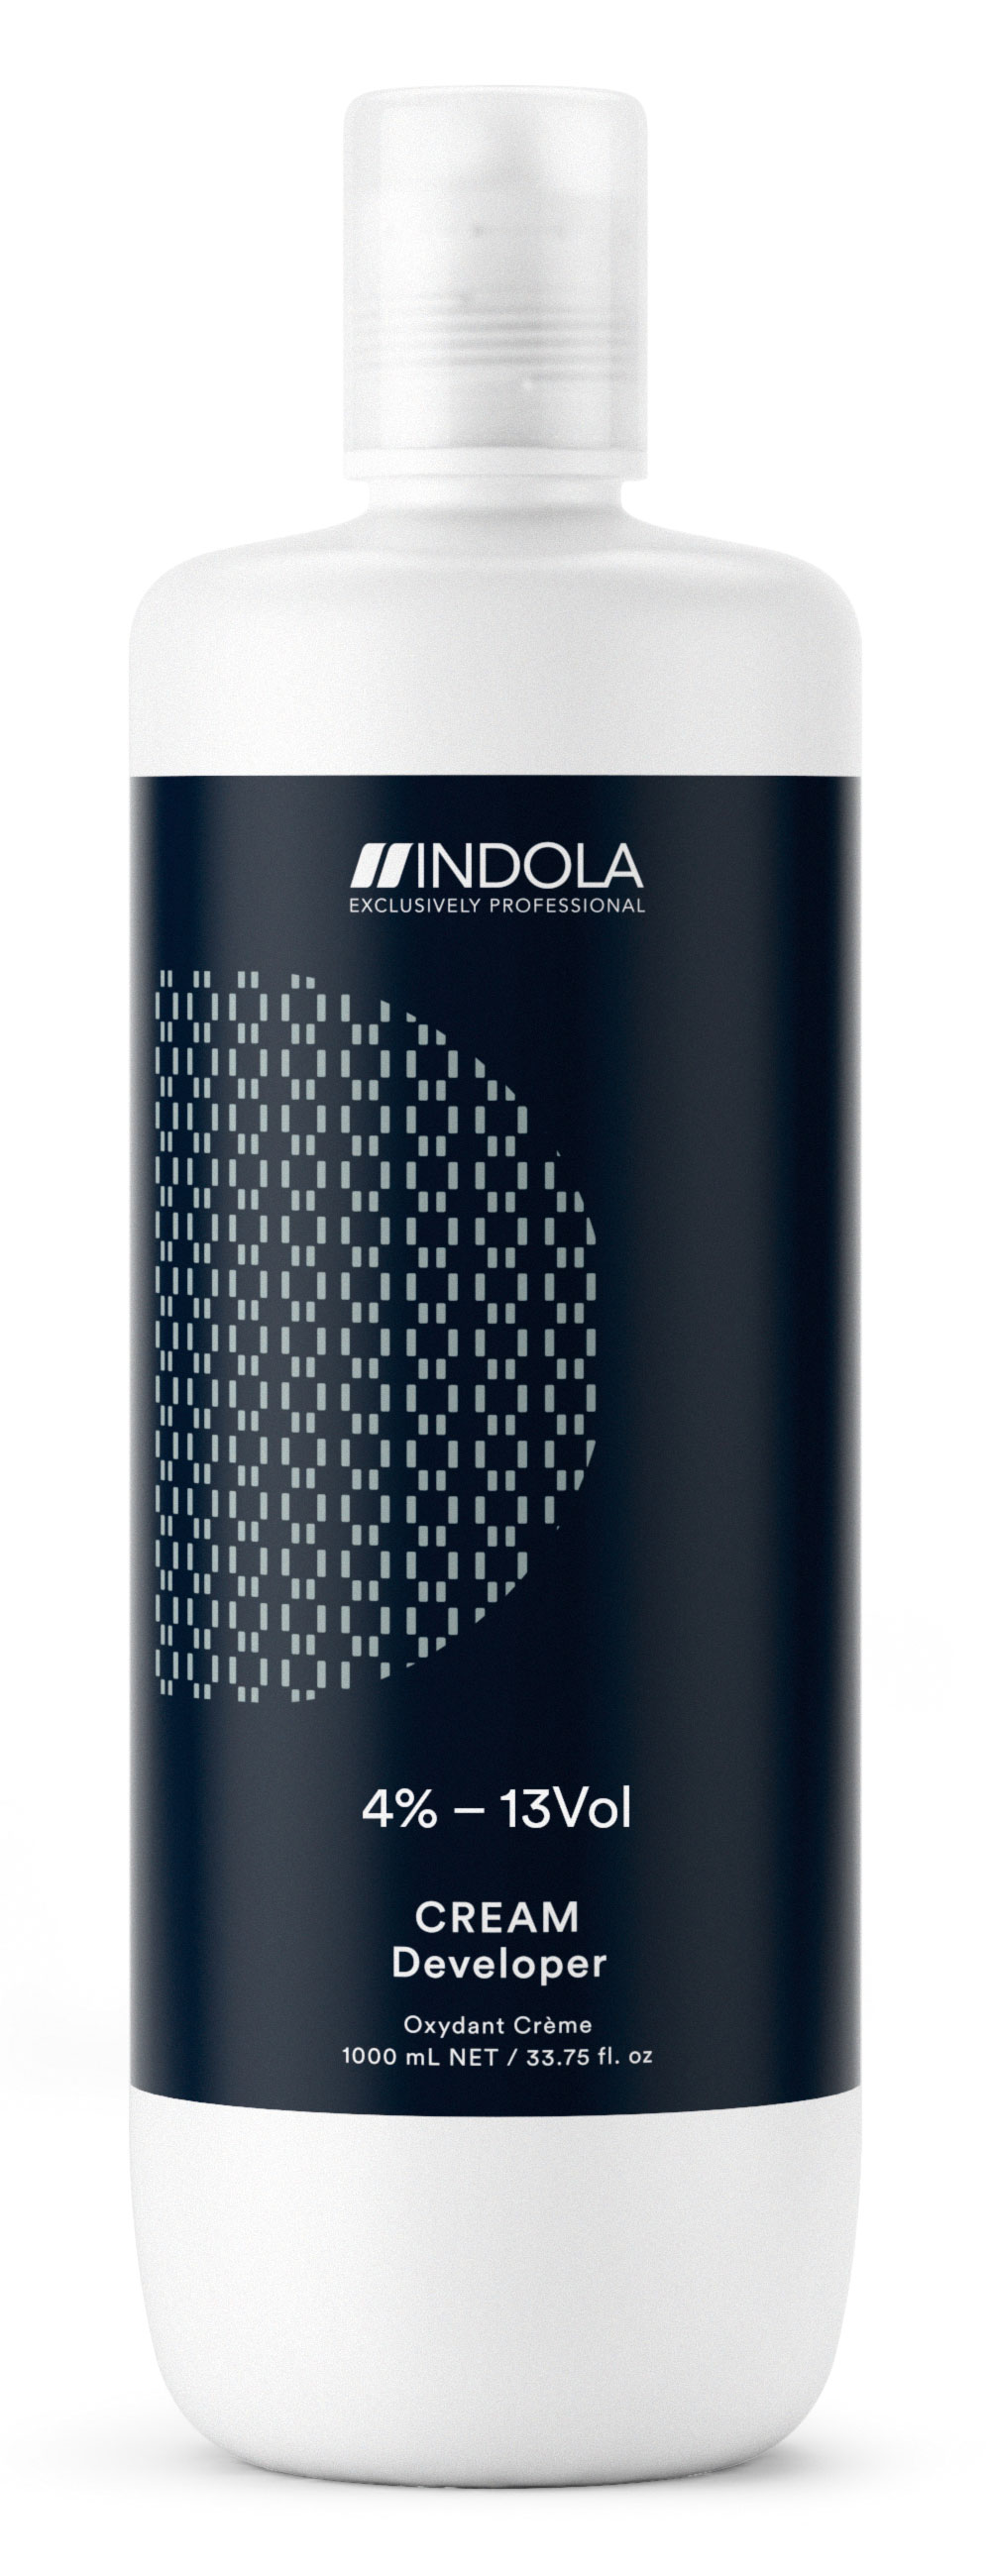 Купить Indola Крем-проявитель 4% – 13Vol Exсlusively professional, 1000 мл (Indola, Окрашивание), Германия